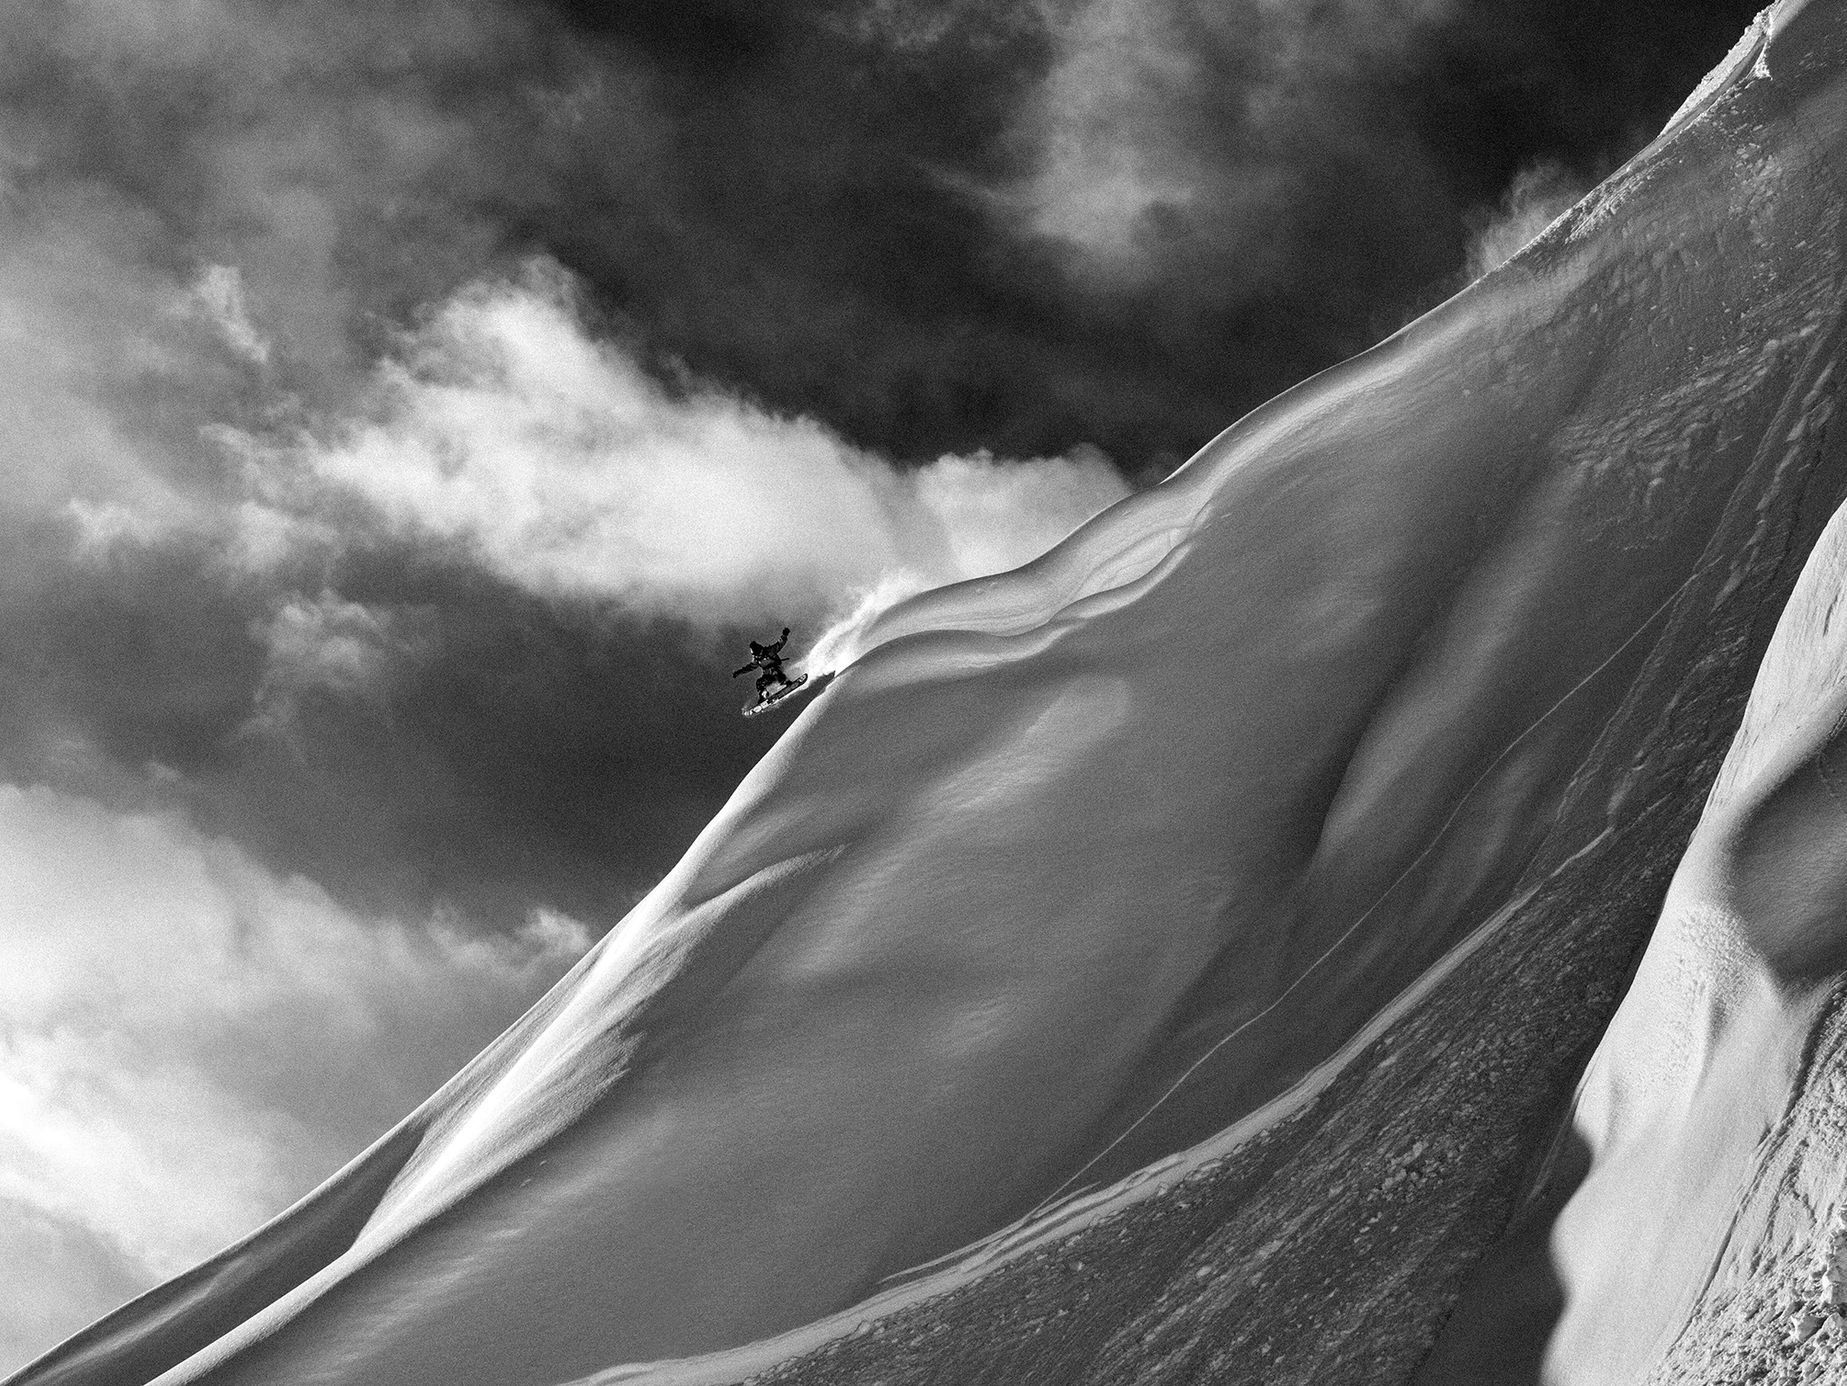 Michal Brouček: horské fotografie (snowboard, lyžování, horolezectví)